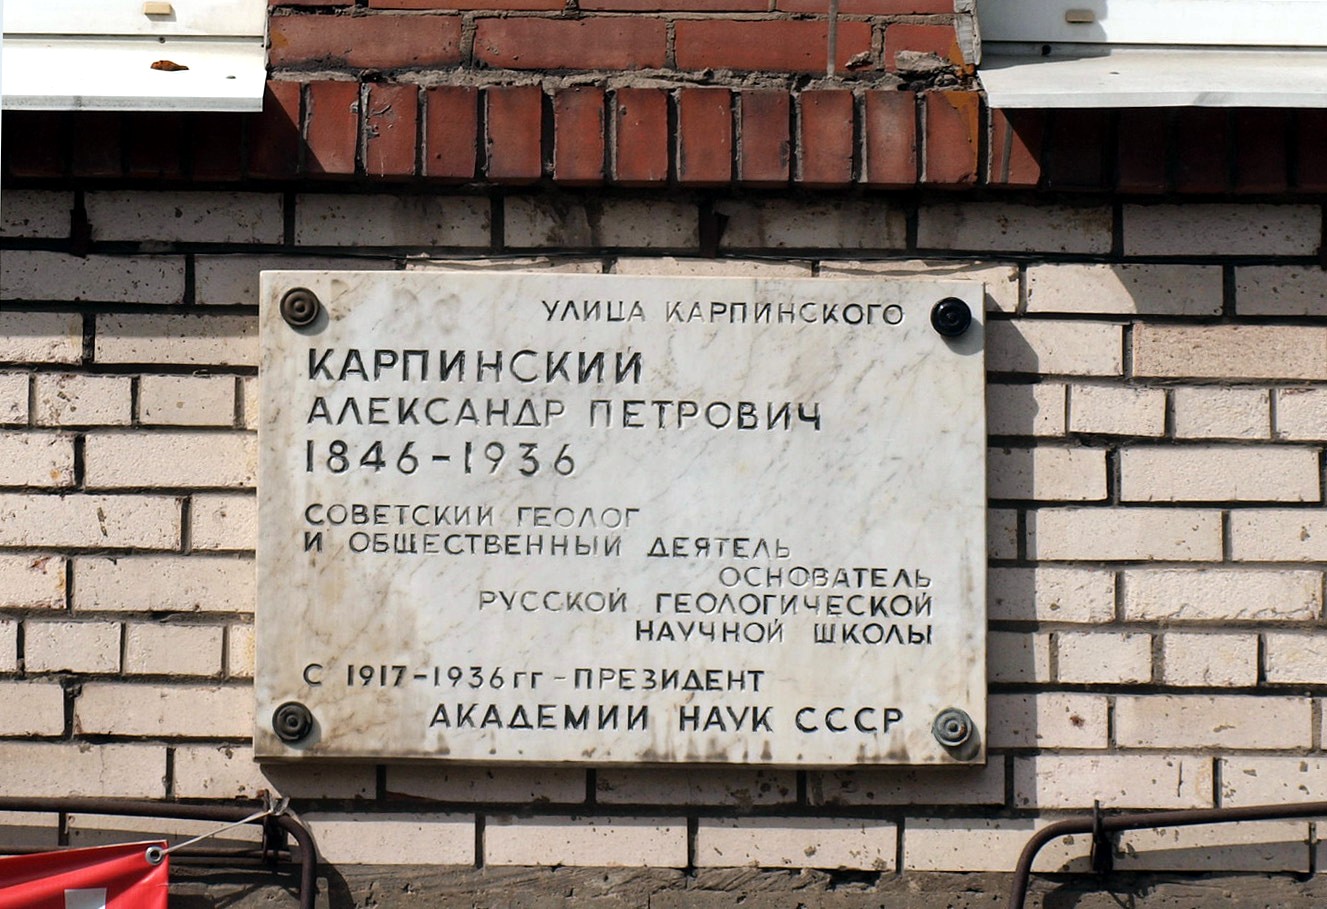 Sankt Petersburg, Улица Карпинского, 20. Sankt Petersburg — Memorial plaques